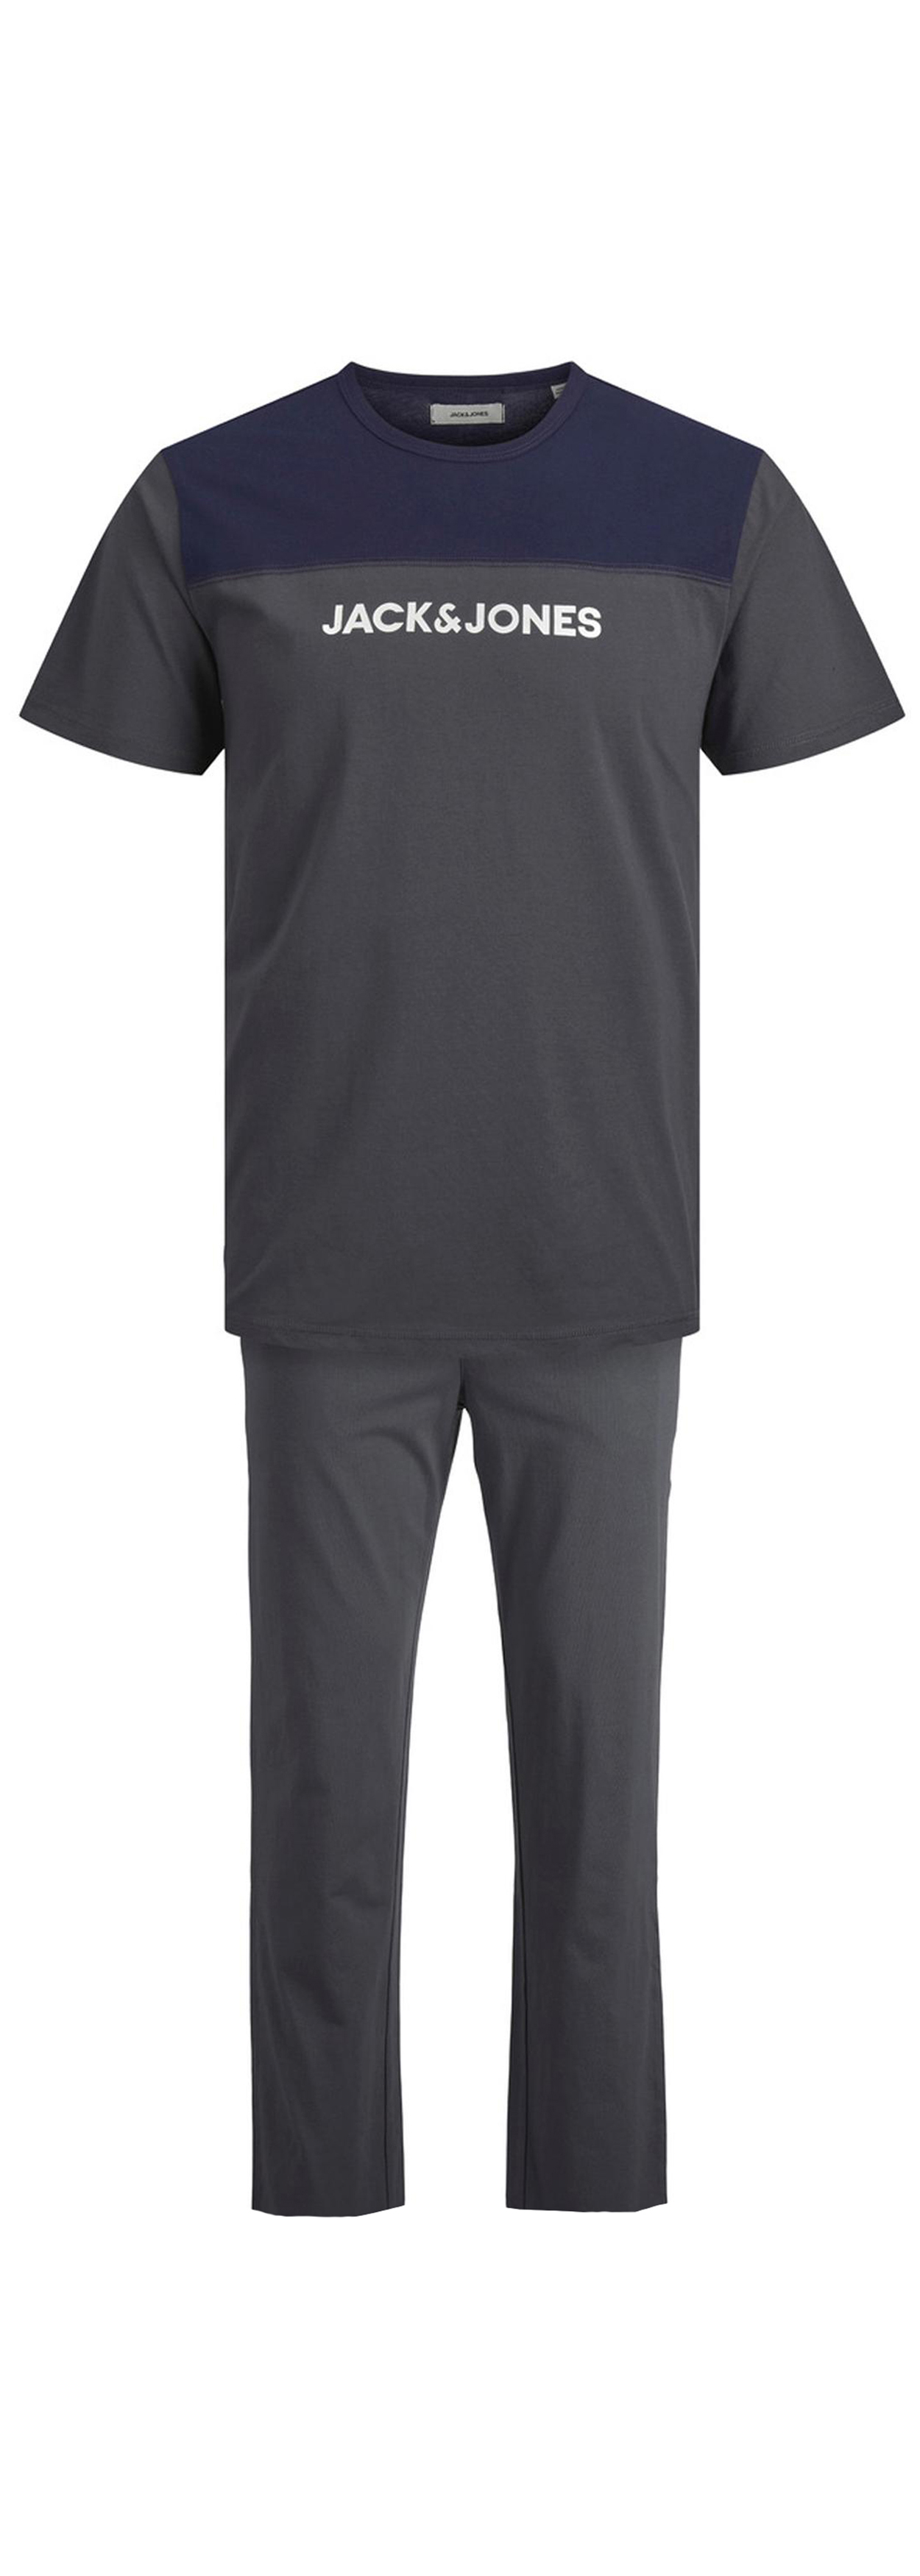 pyjama jack & jones en coton : tee-shirt col rond gris anthracite et bleu marine et pantalon gris anthracite